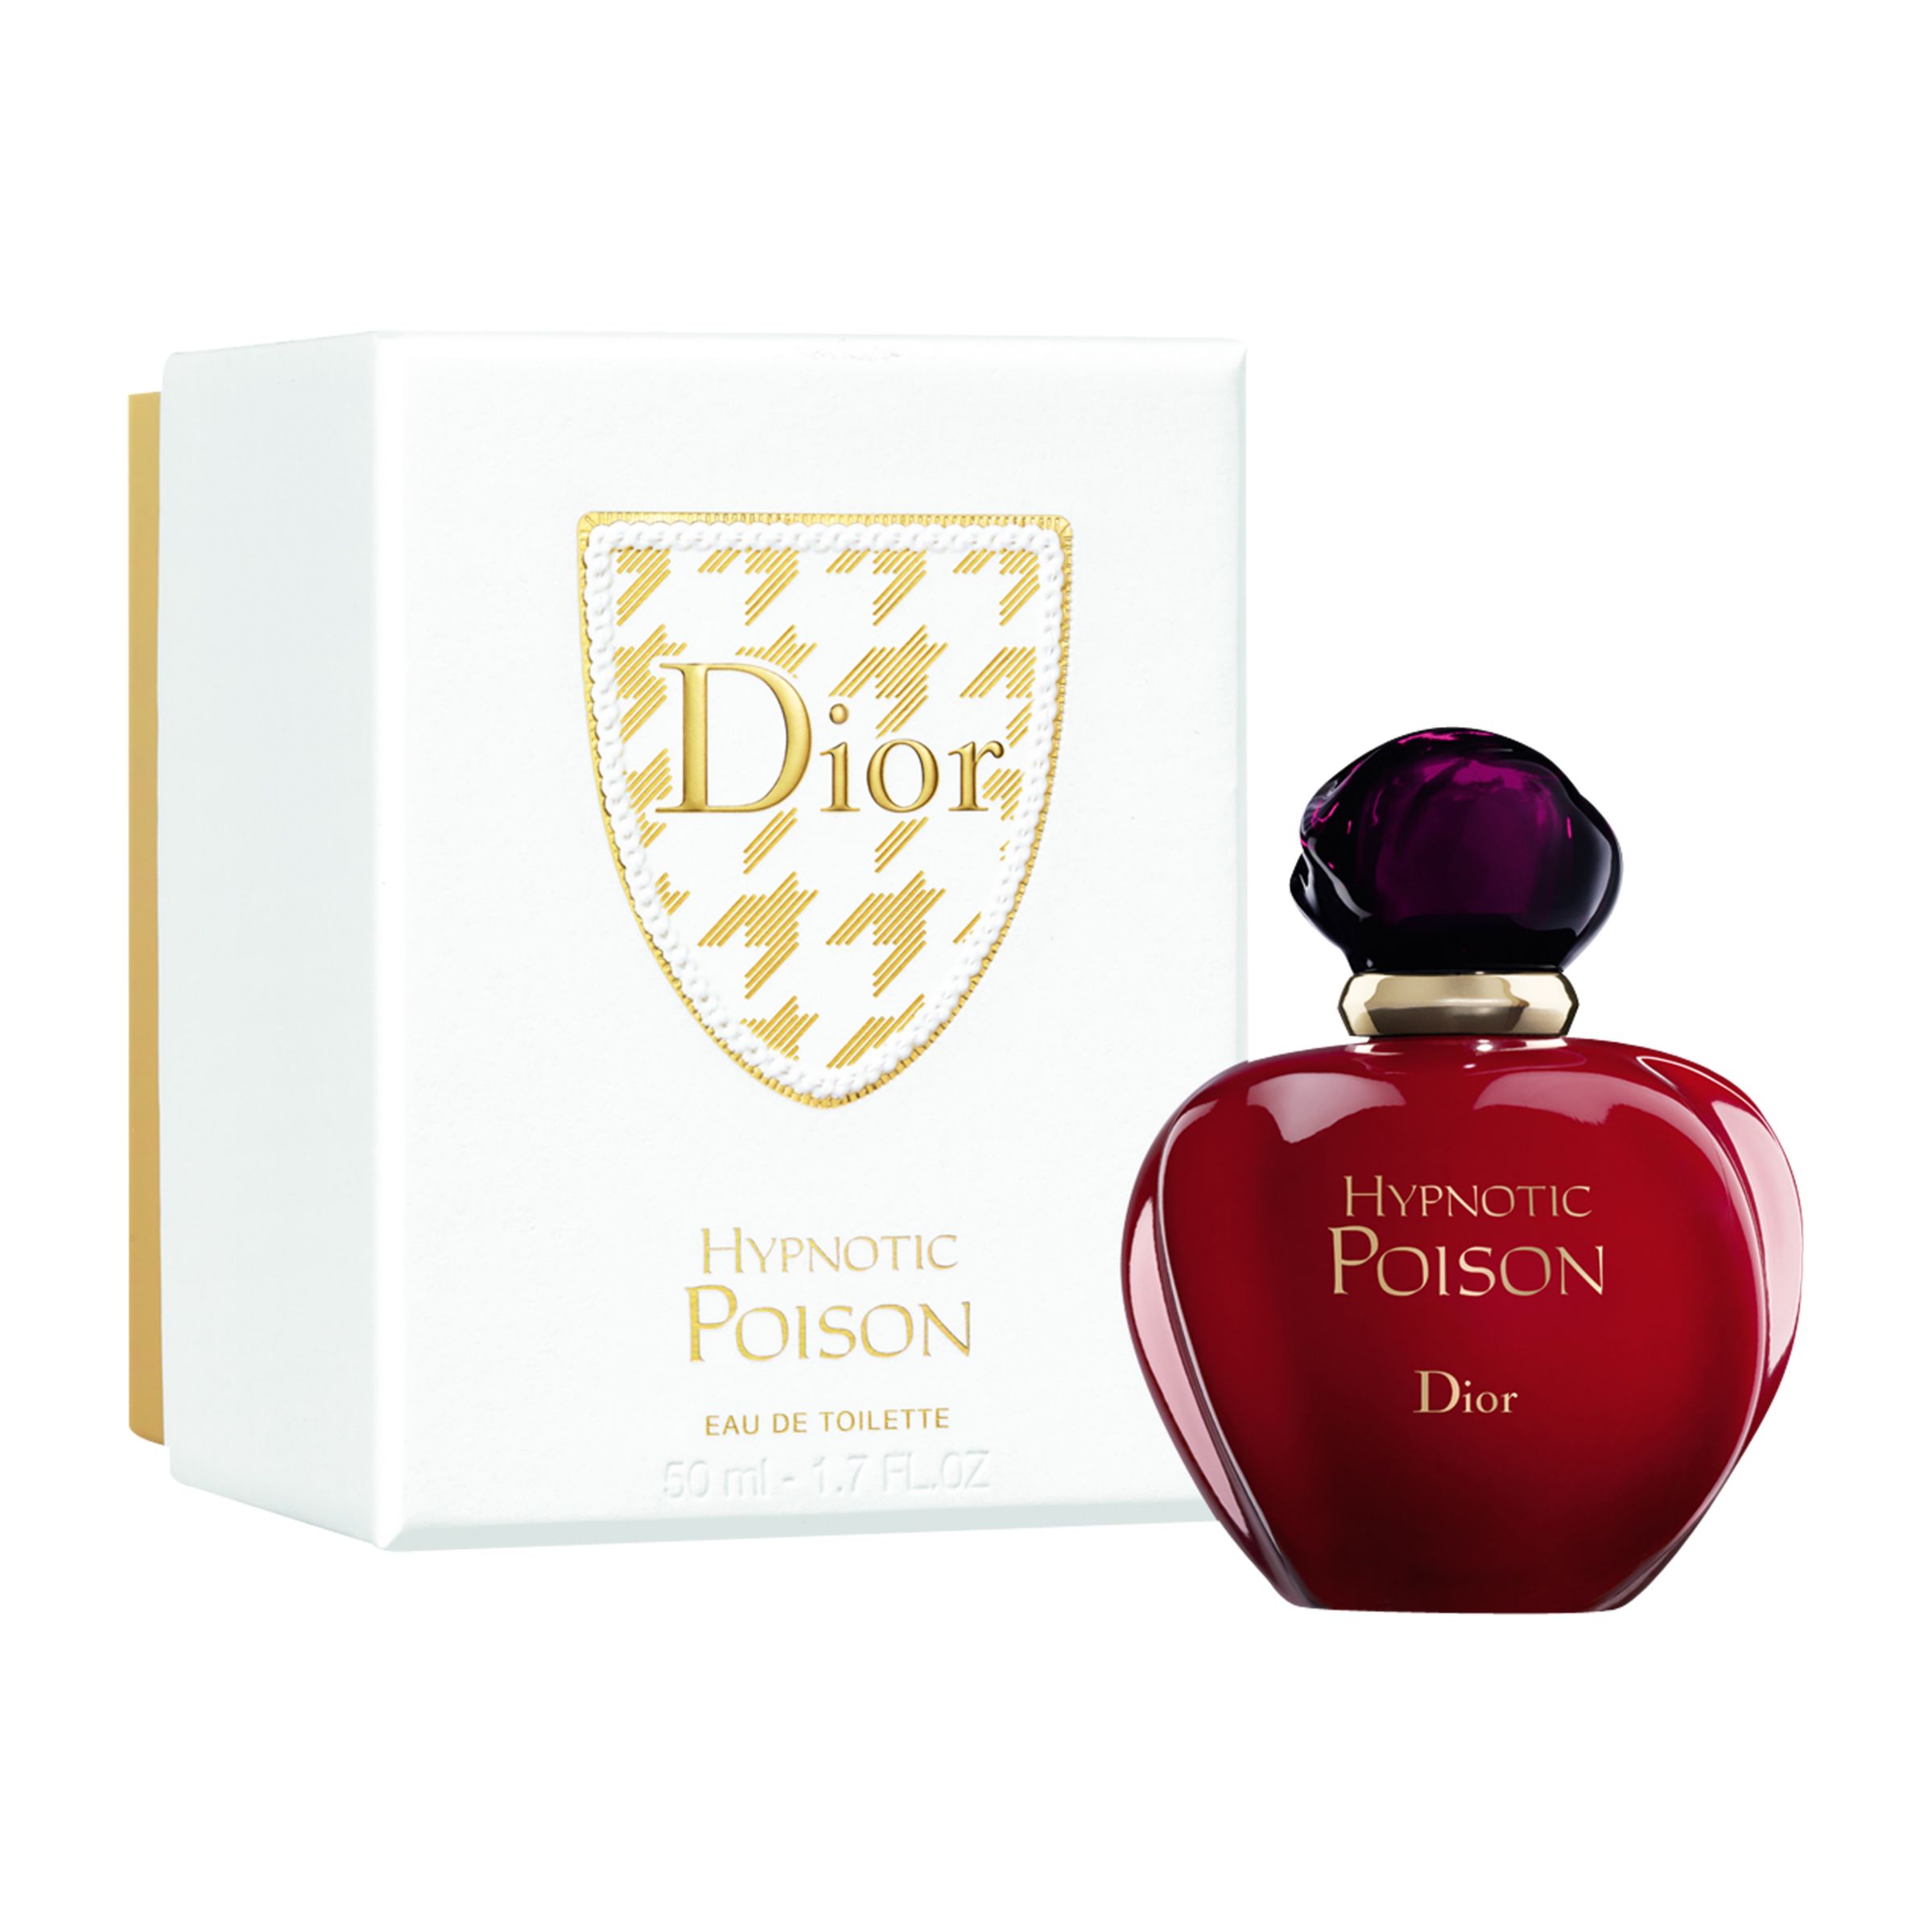 Dior Hypnotic Poison 50ml Eau De Toilette Christmas Gift Box At John Lewis Partners